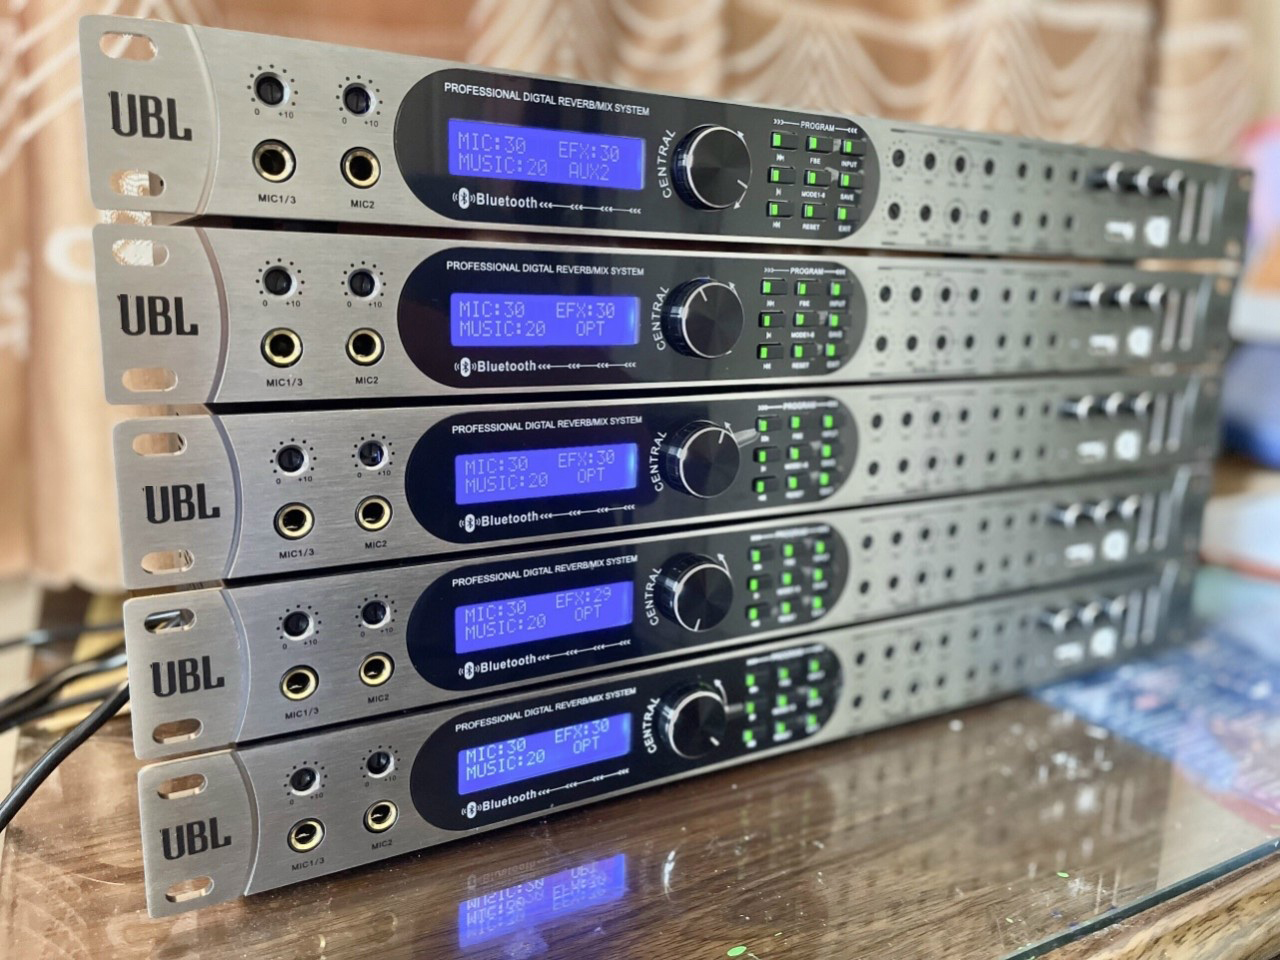 Vang số UBL UR30 - Vang số chỉnh cơ JBL chuyên nghiệp cho dàn âm thanh - Chống hú tối ưu, Effect mượt mà, cổng sub riêng biệt - Đầy đủ kết nối Bluetooth, AV, USB, Coaxial, cổng quang (optical) - Màn hình hiển thị thông số - Hàng nhập khẩu